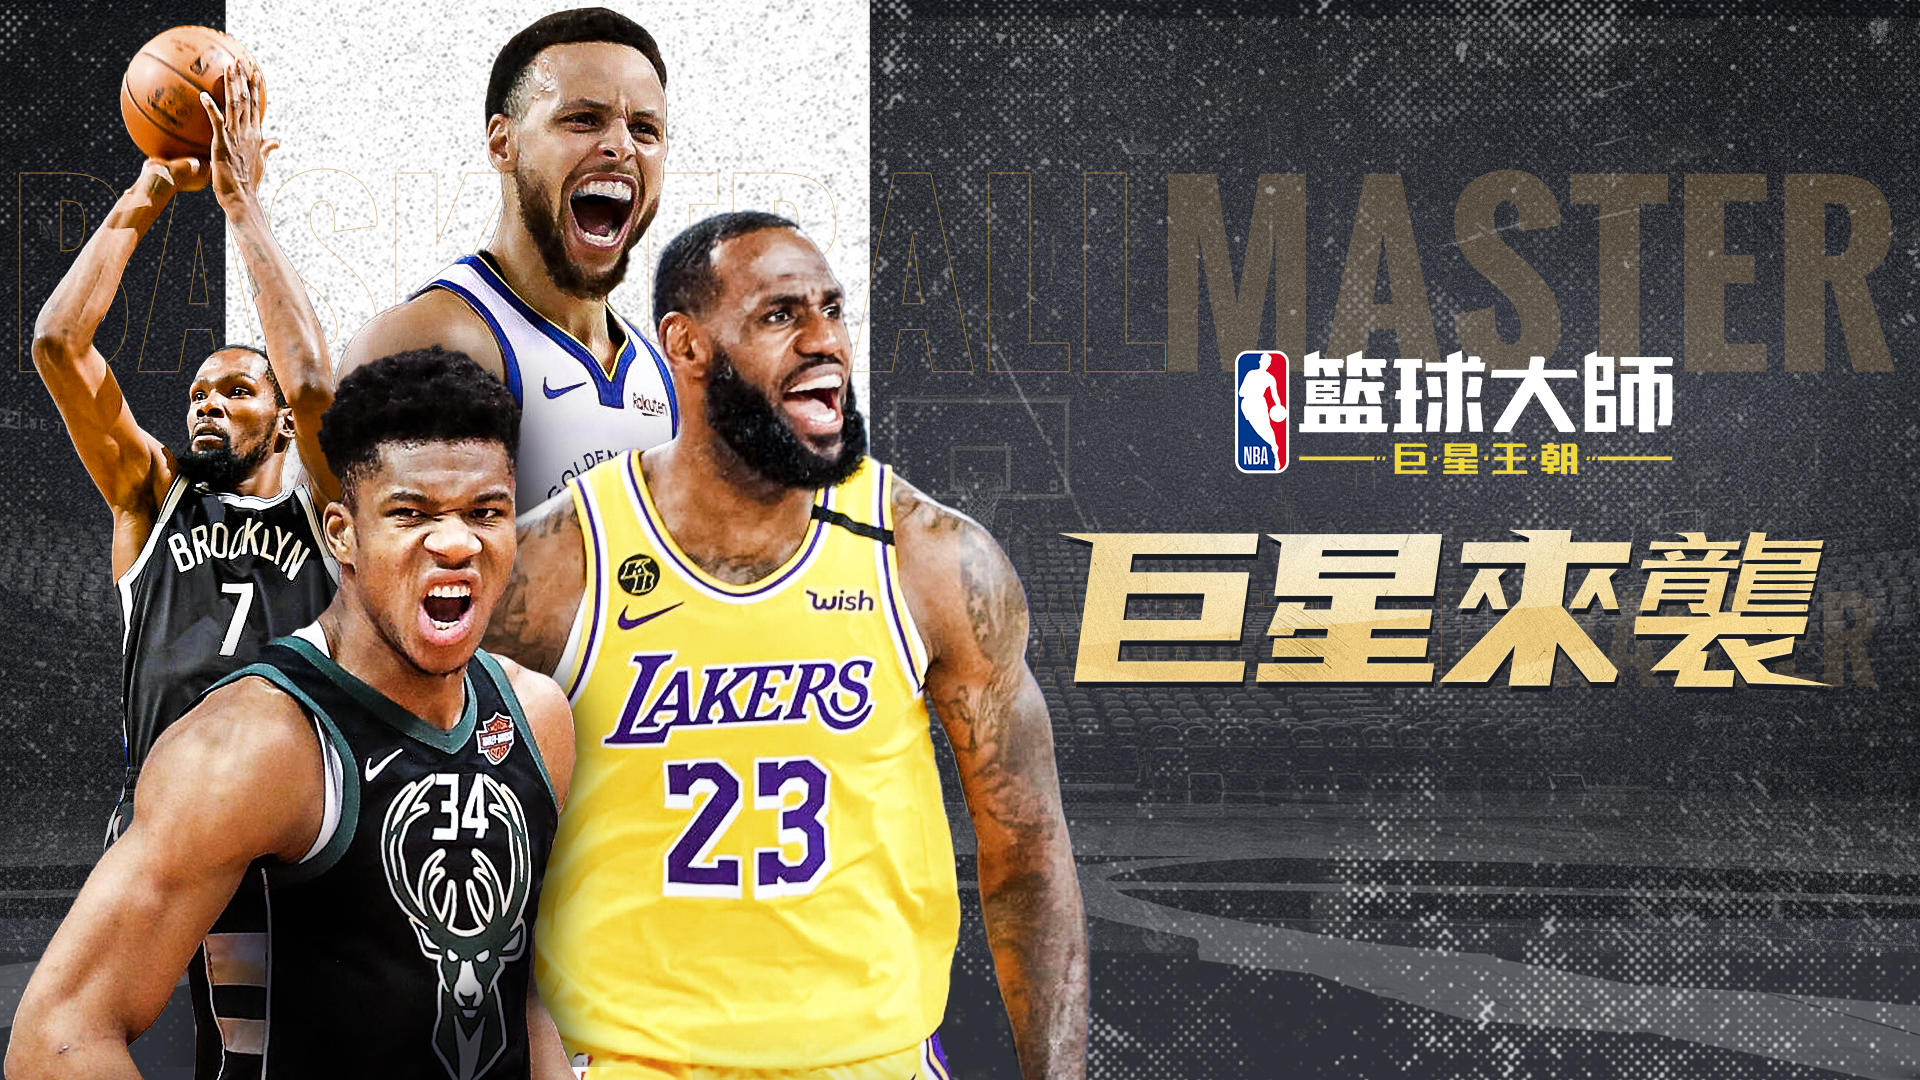 Banner of Maîtres de basket de la NBA 